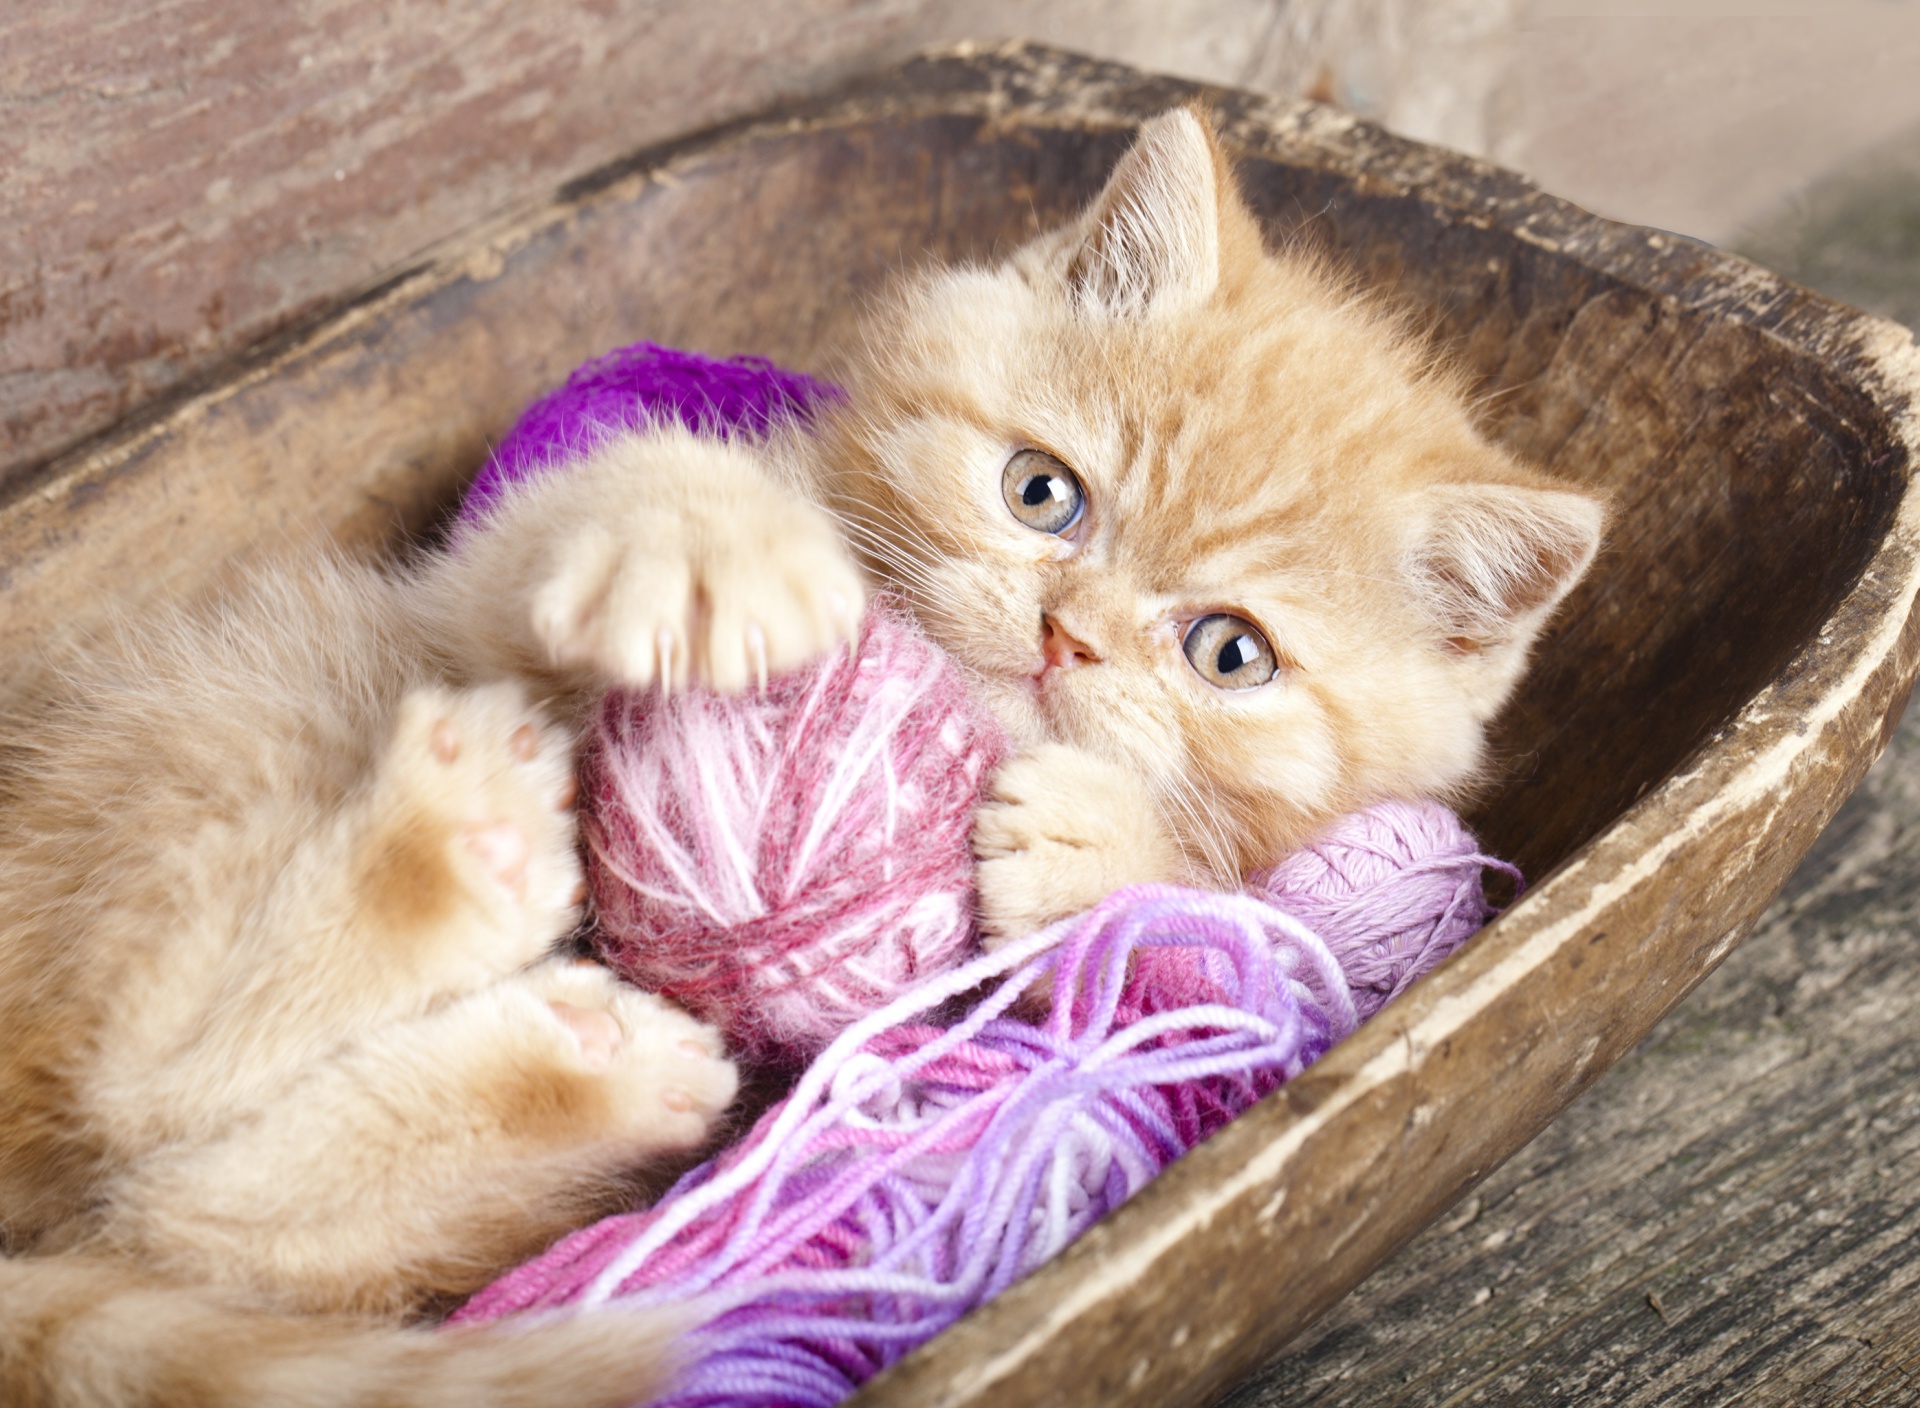 Sfondi Cute Kitten Playing With A Ball Of Yarn 1920x1408